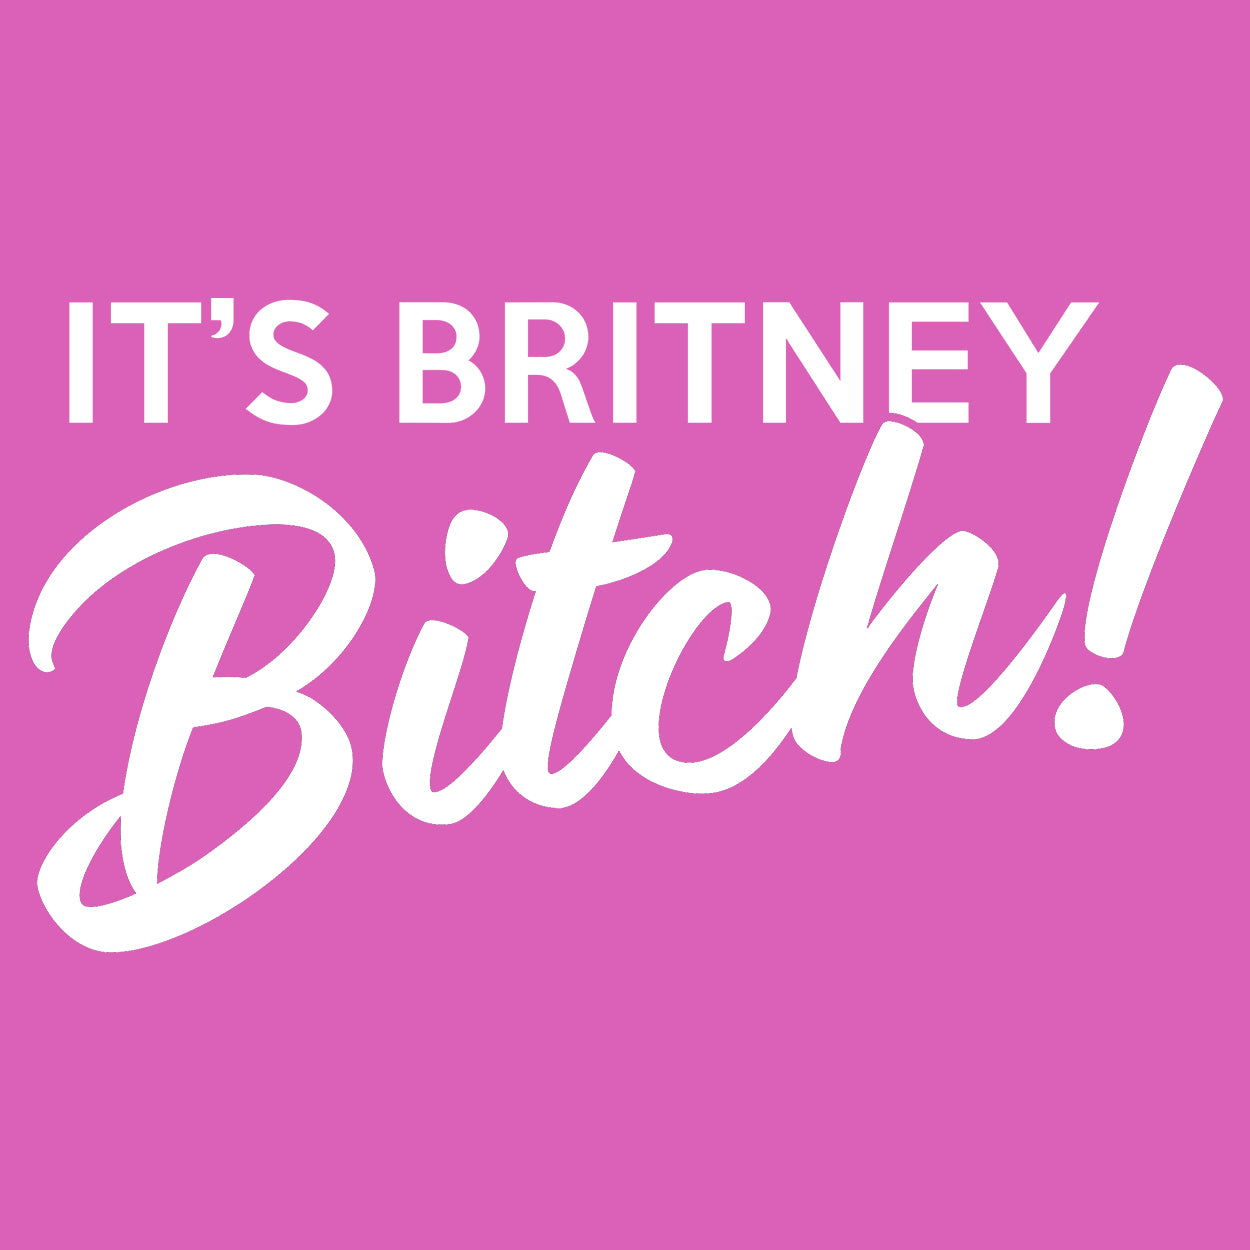 It's Britney Bitch